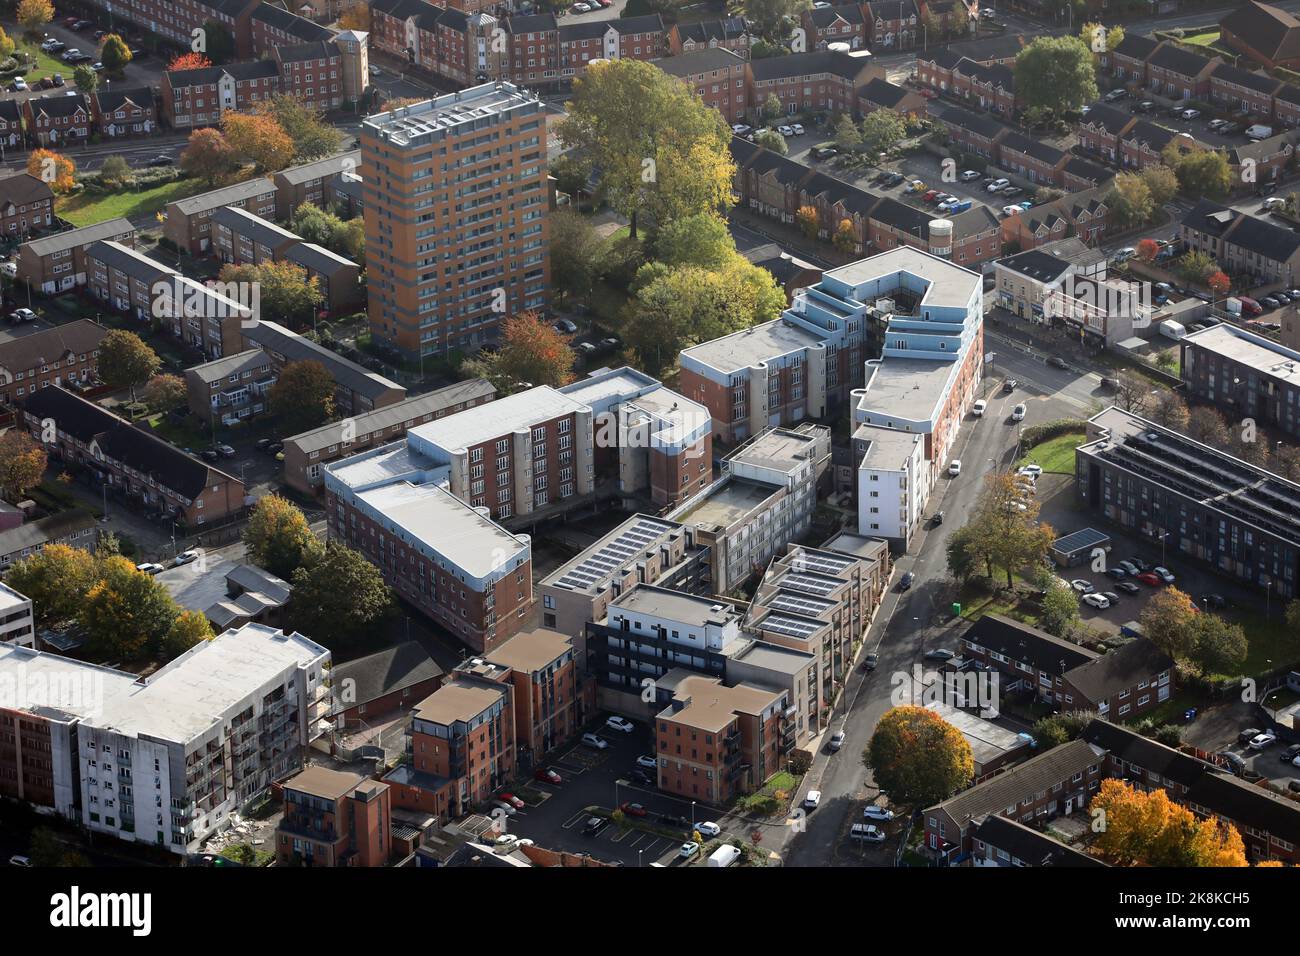 Vista aerea di una zona commerciale e delle chiese di Stretford, Manchester, che contiene Lucy Street, Shawheath Close e St Lawrence Street Foto Stock